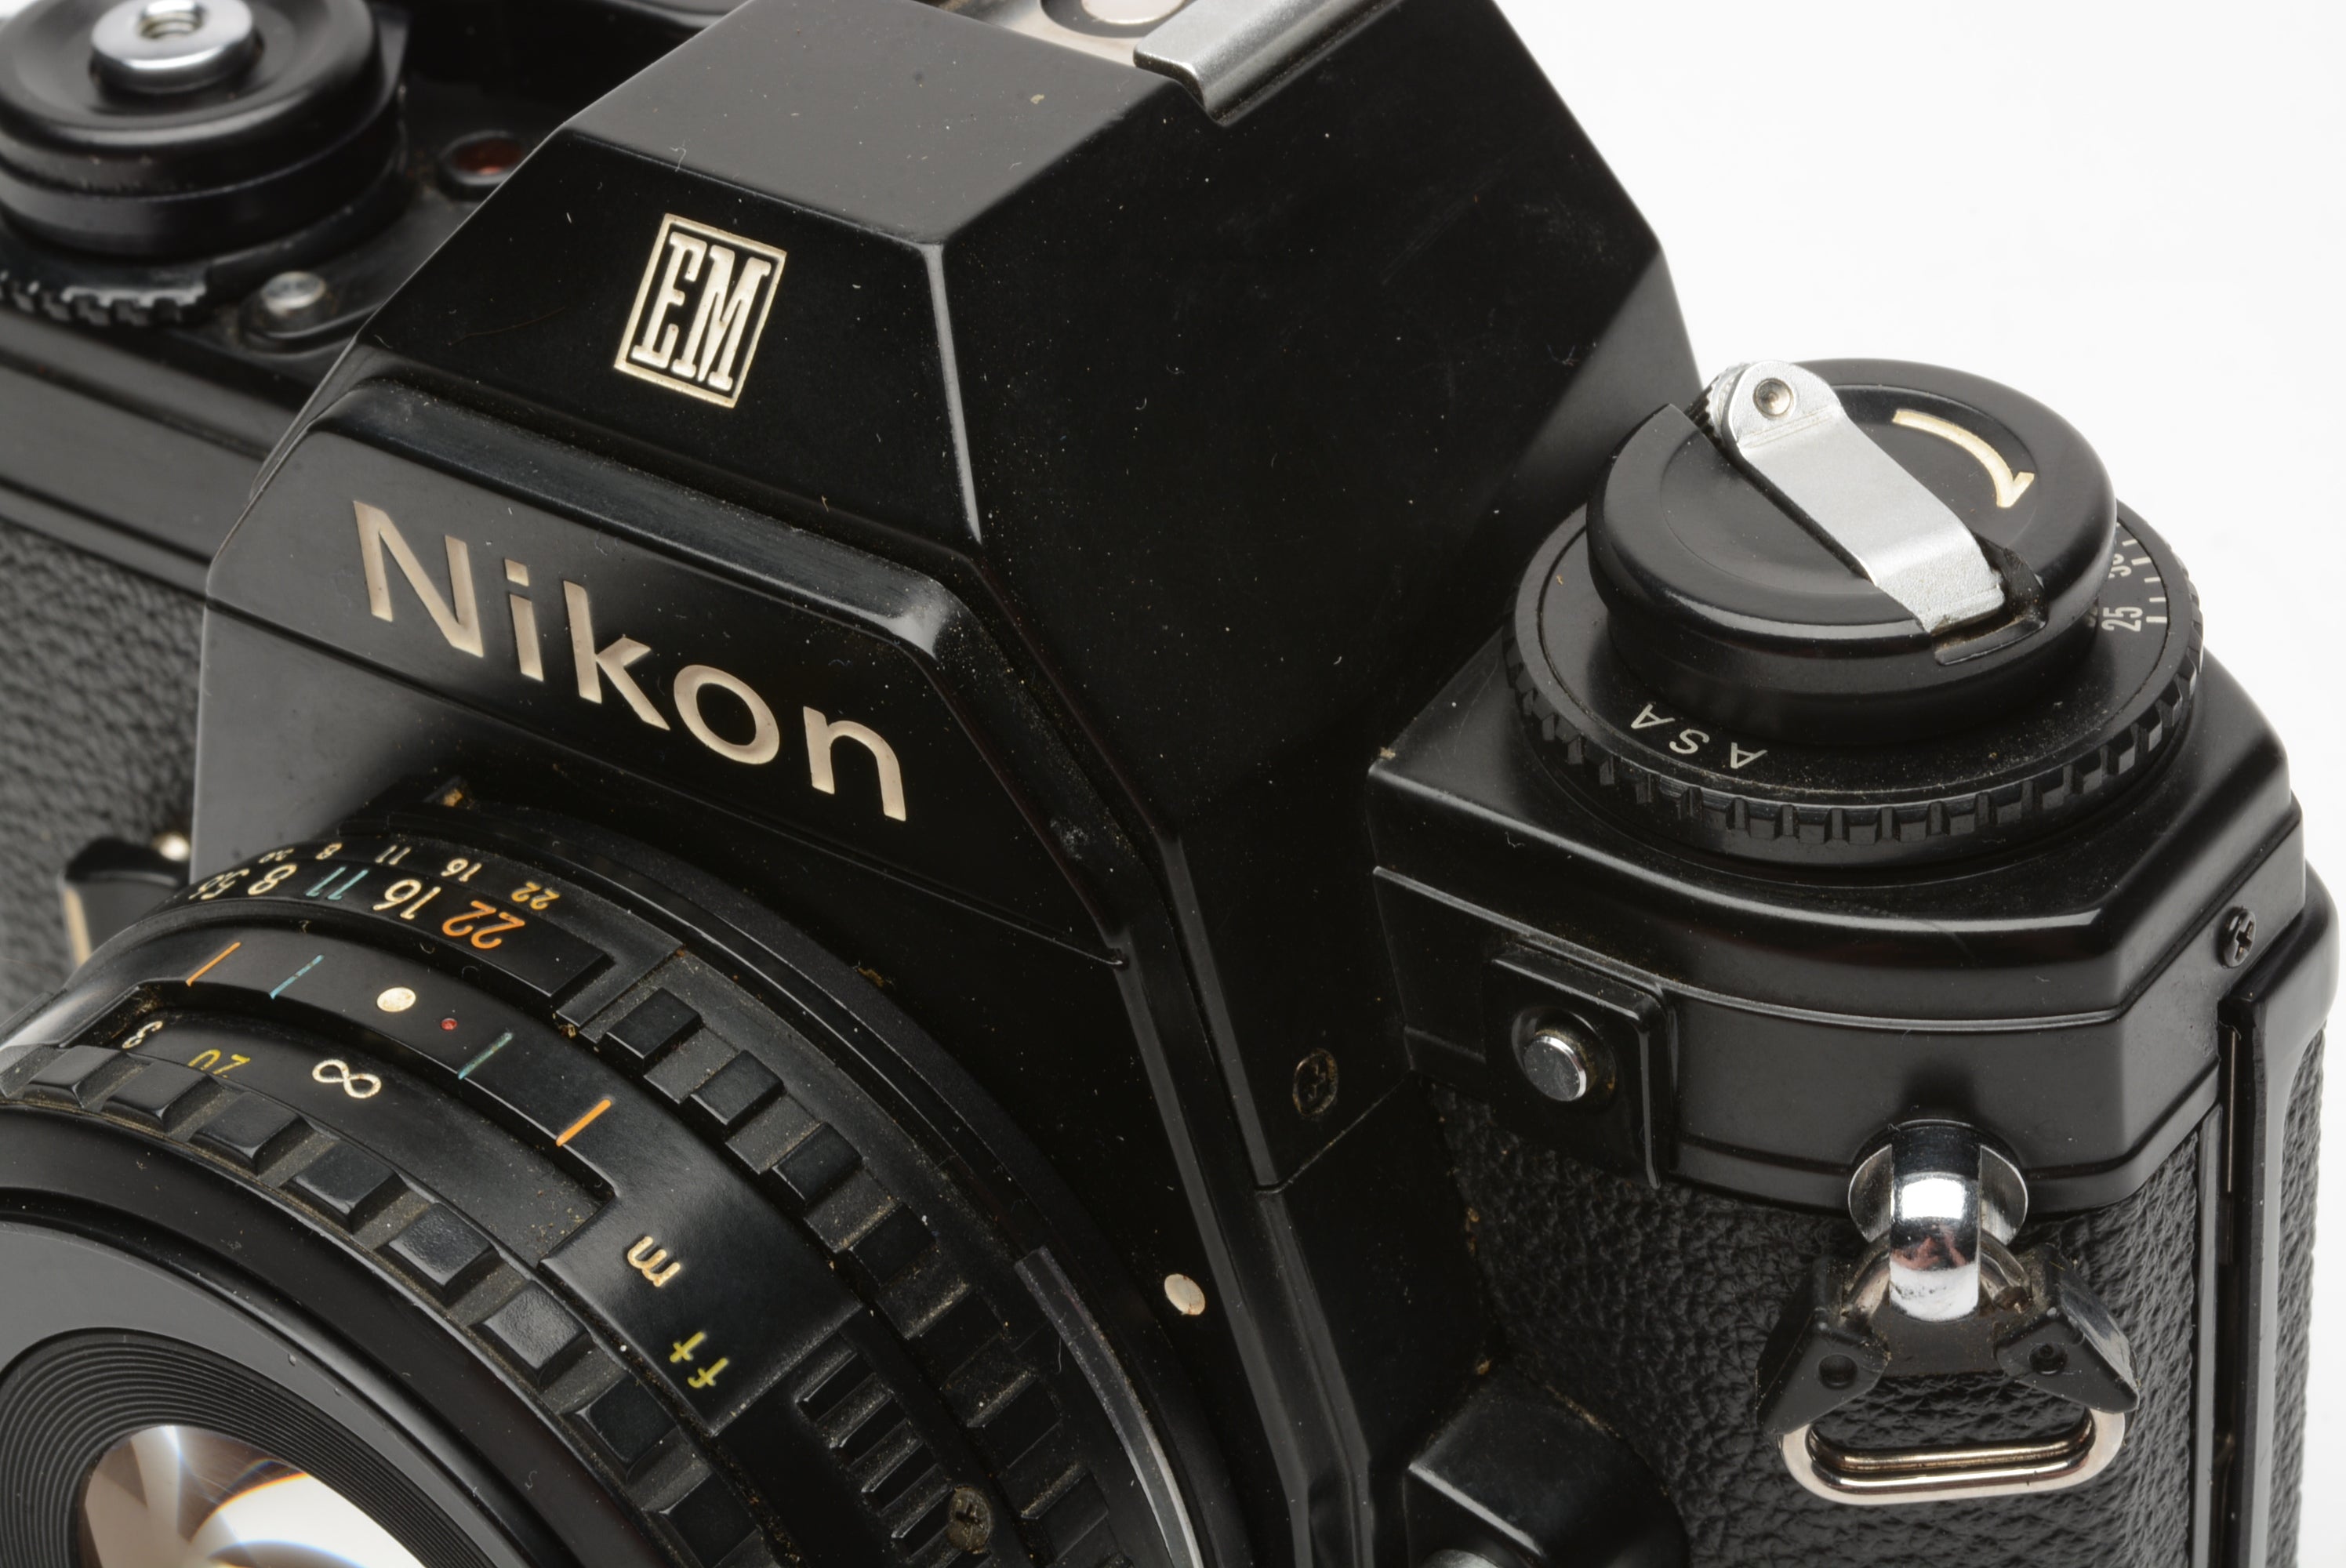 Nikon EM 35mm SLR w/Nikon Series E 50mm f1.8 lens, strap, cap